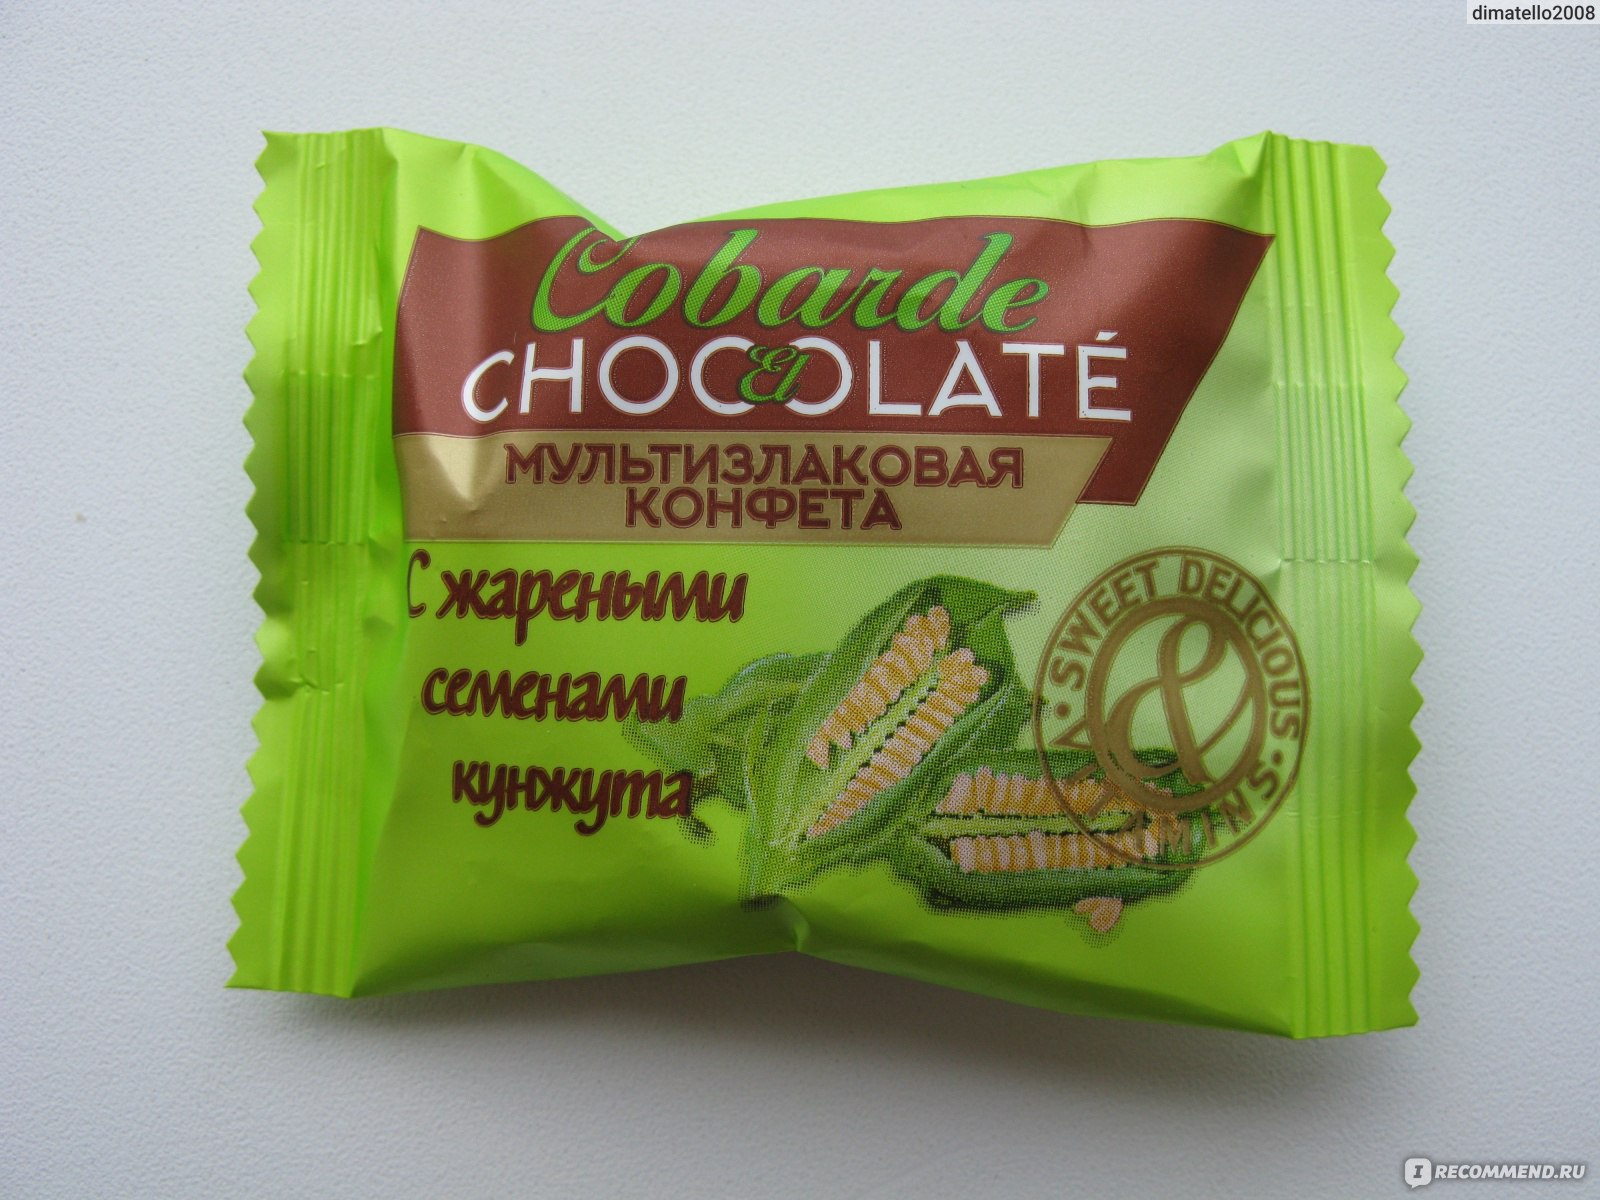 Мультизлаковая конфета Chocolate